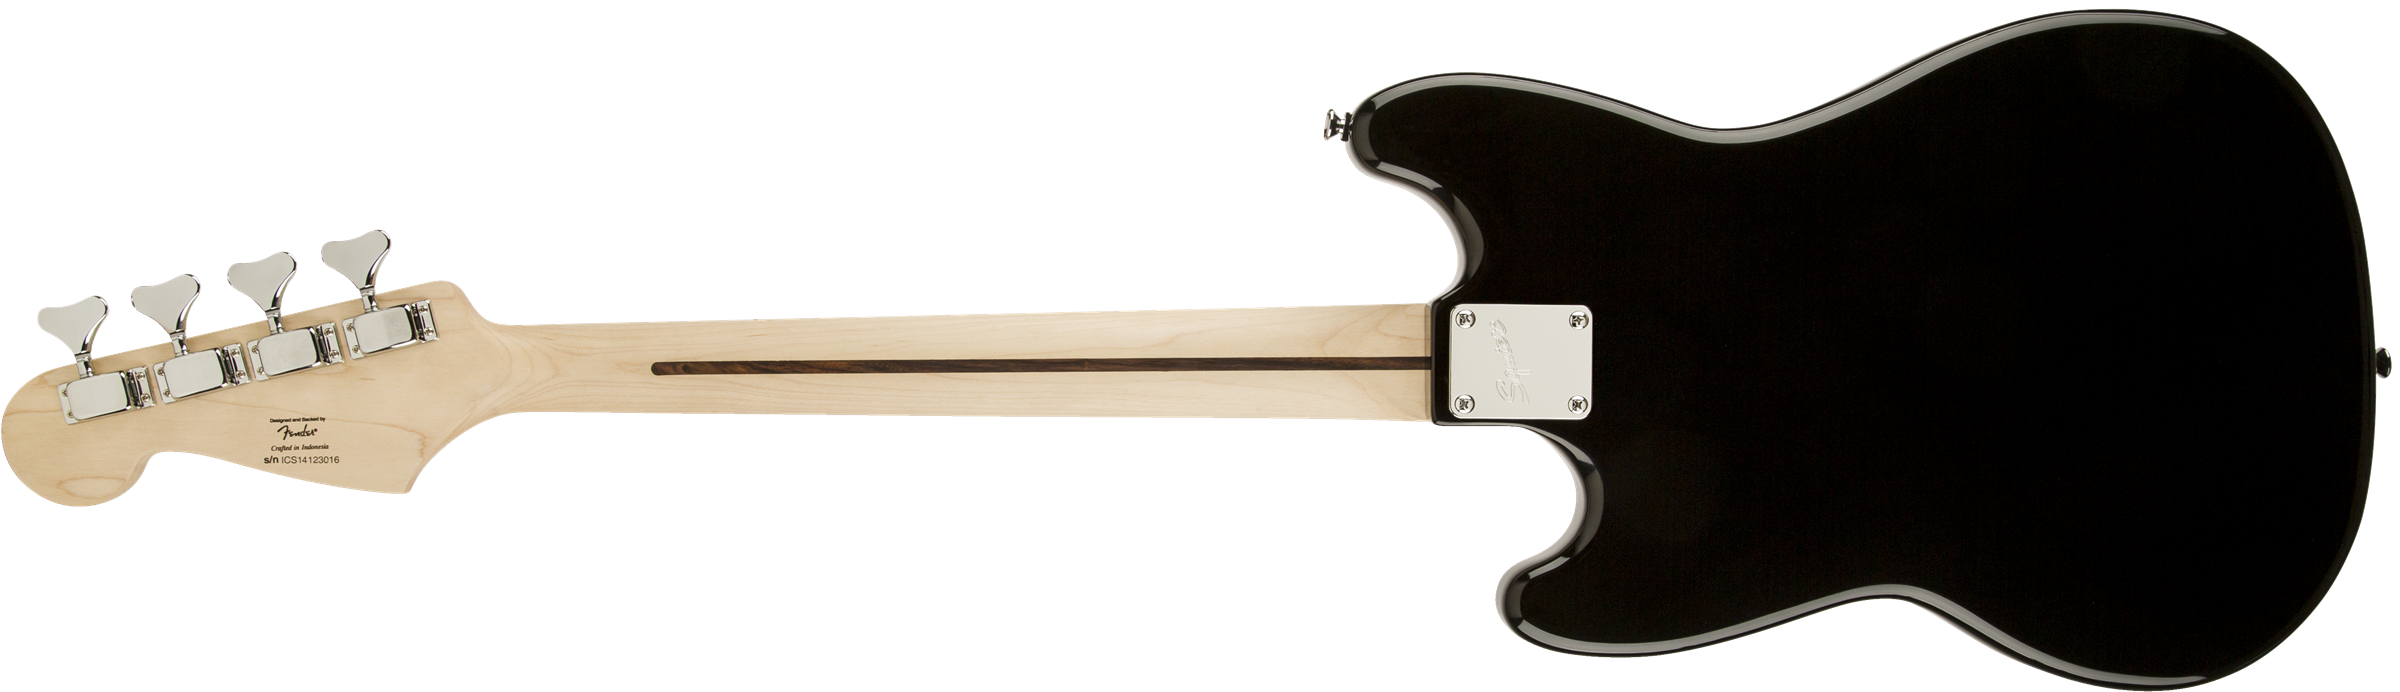 Squier Bronco Bass Mn - Black - Short scale elektrische bas - Variation 1